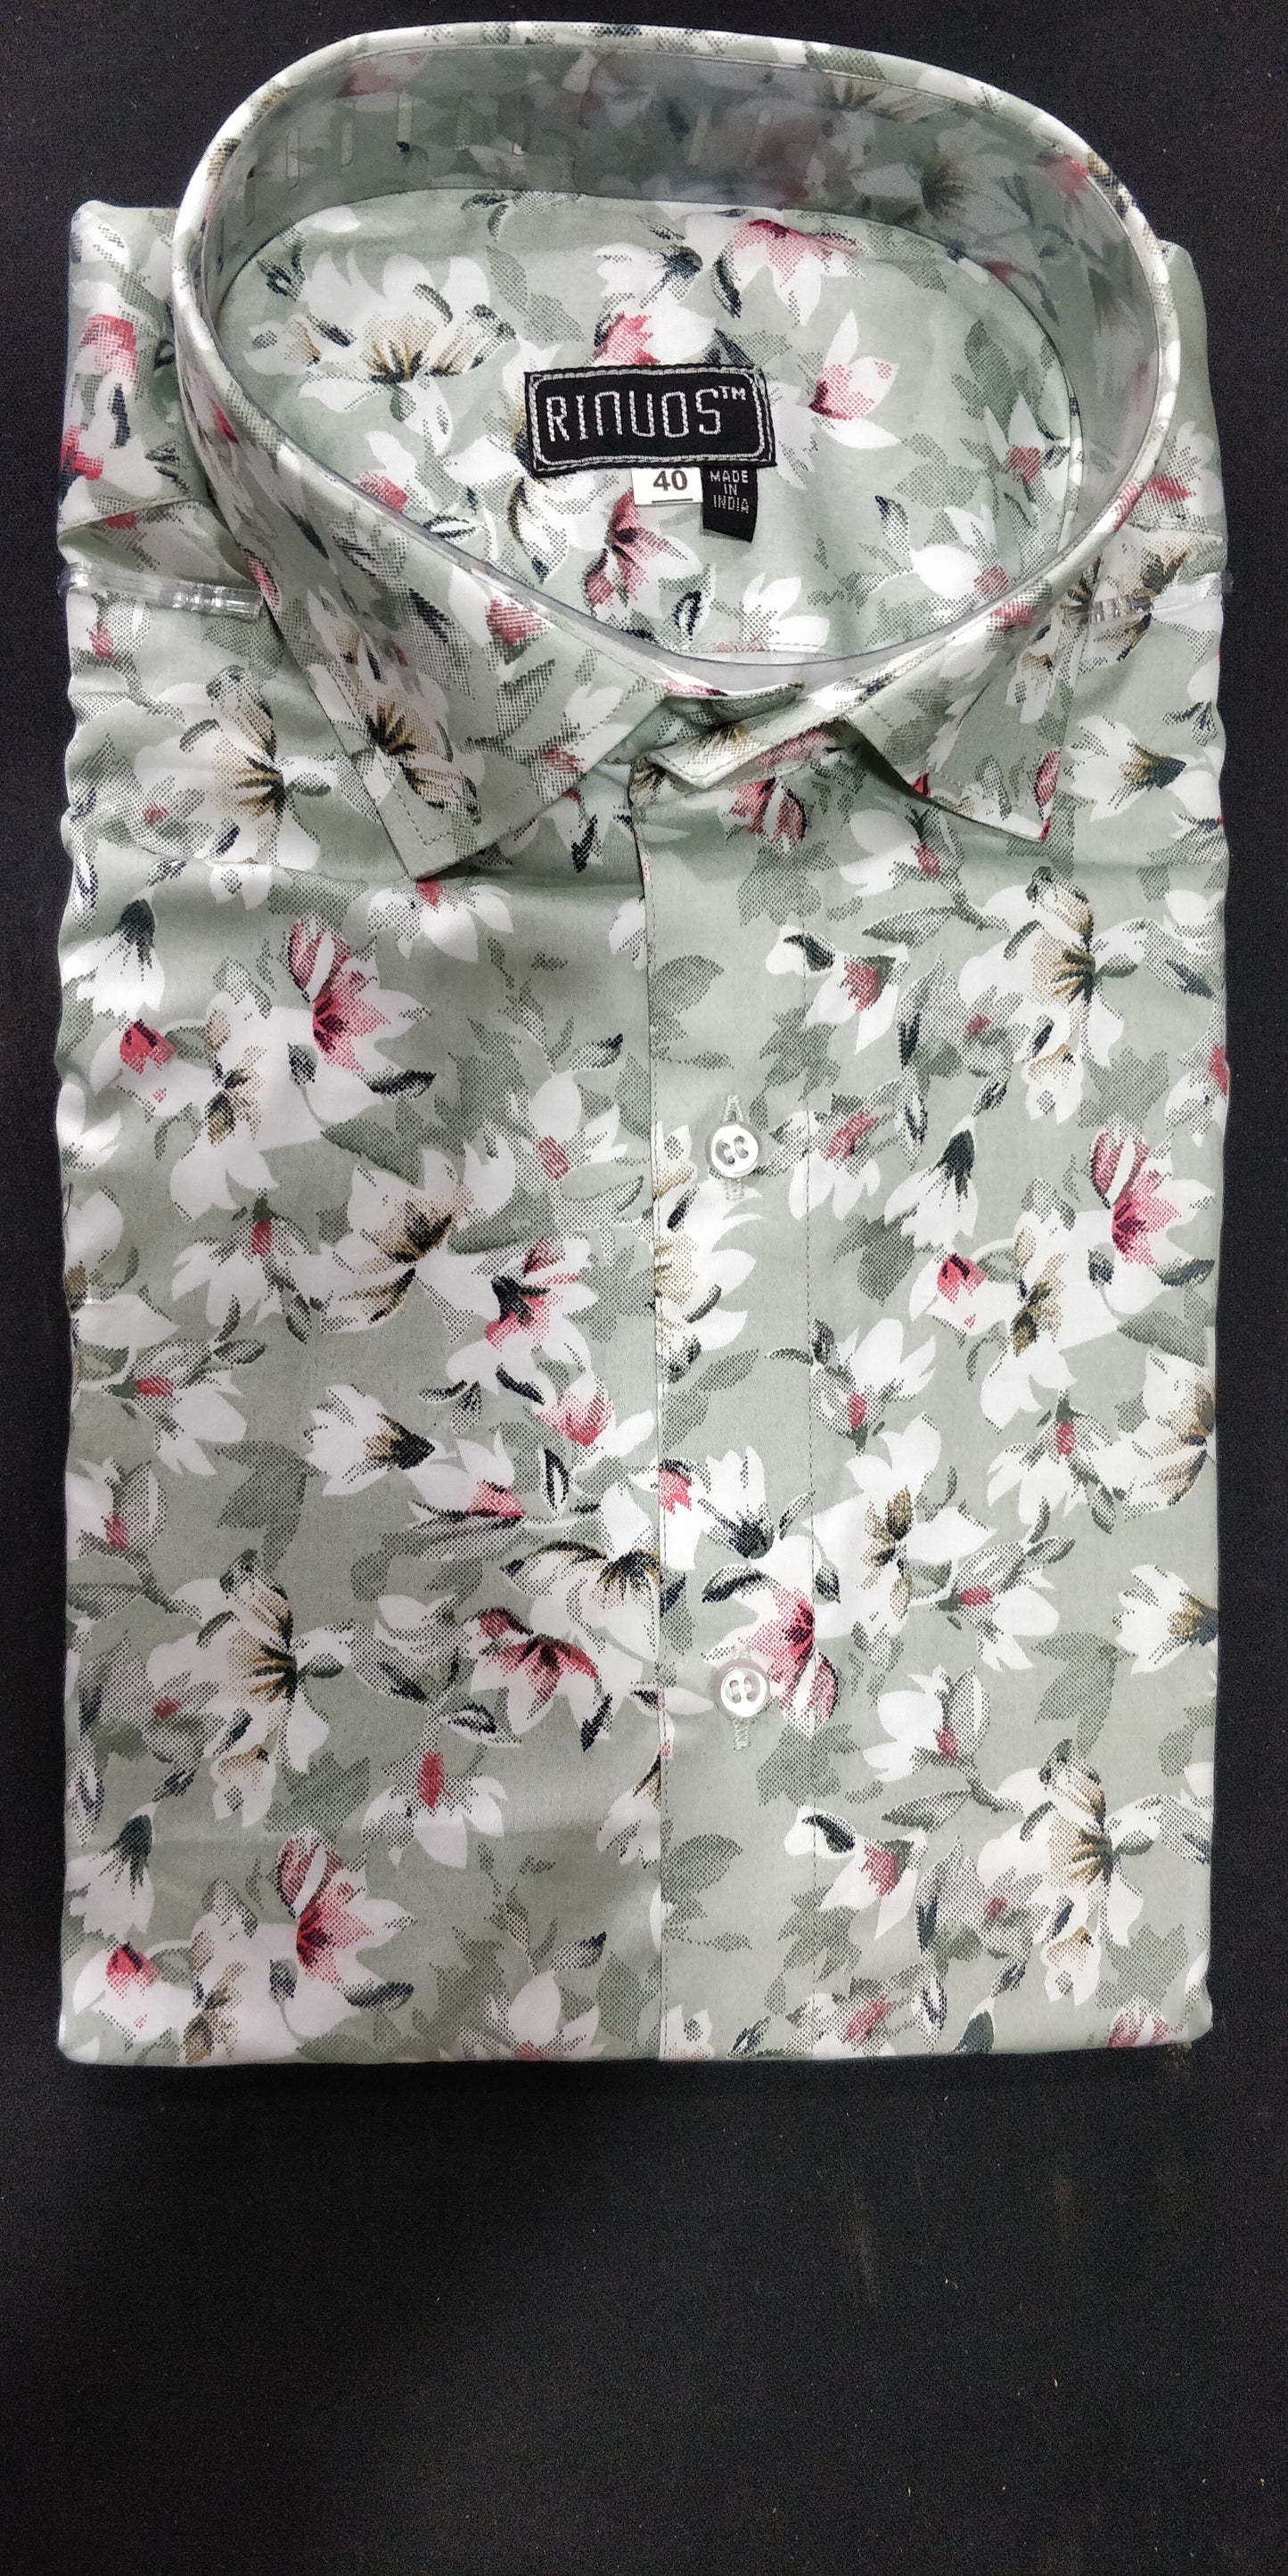 Floral Printed Men's Shirt